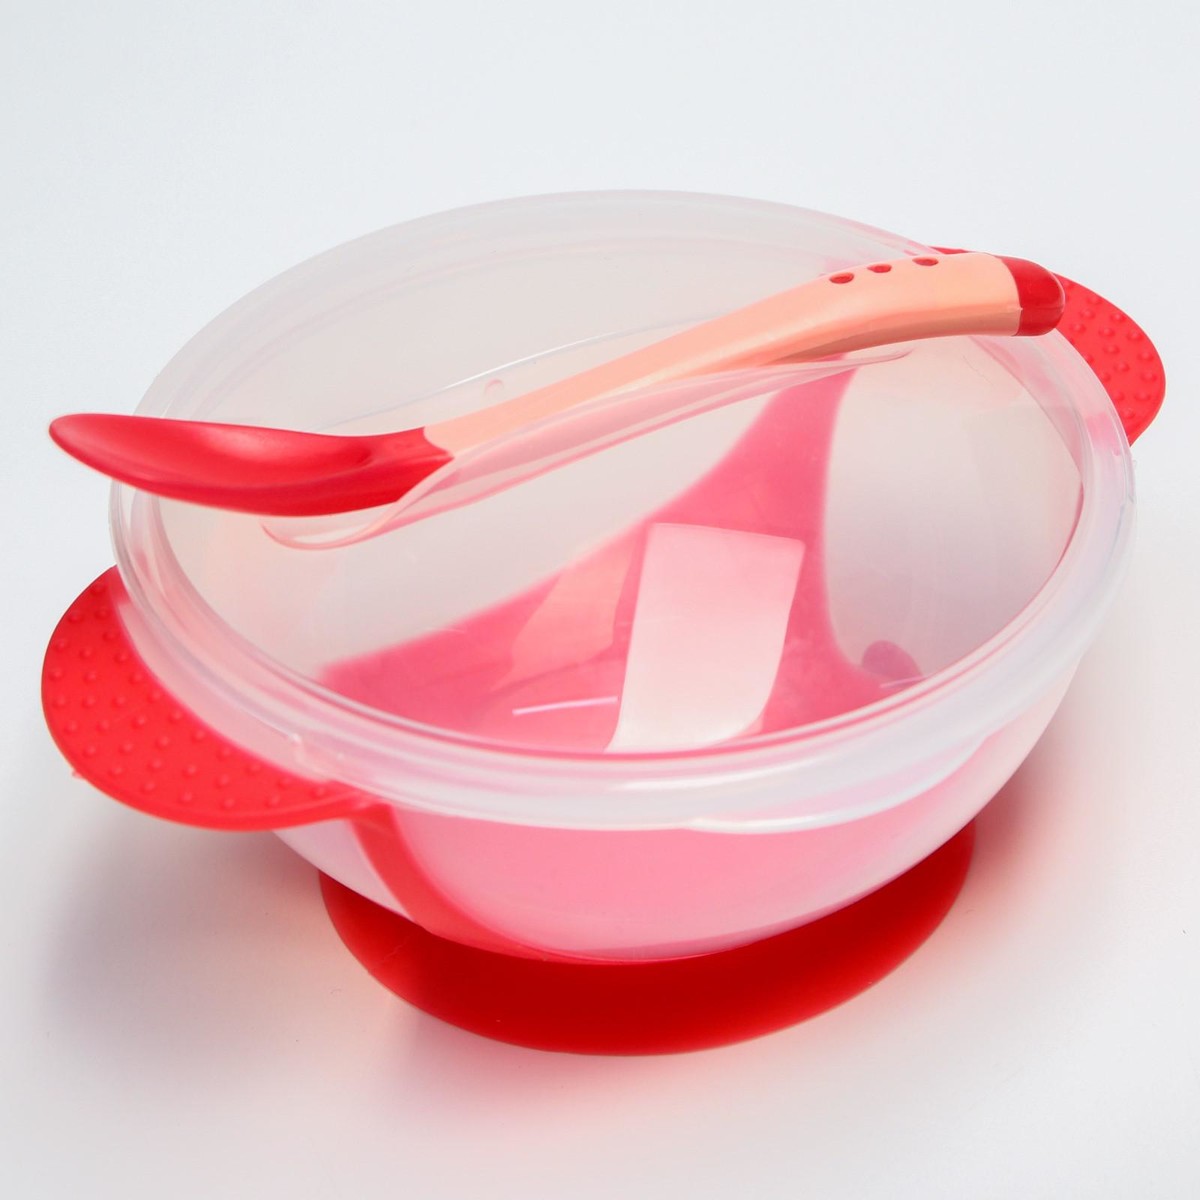 Набор для кормления: миска на присоске 340 мл., с крышкой, термоложка, цвет красно-бежевый набор для кормления миска на присоске с крышкой ложка розовый